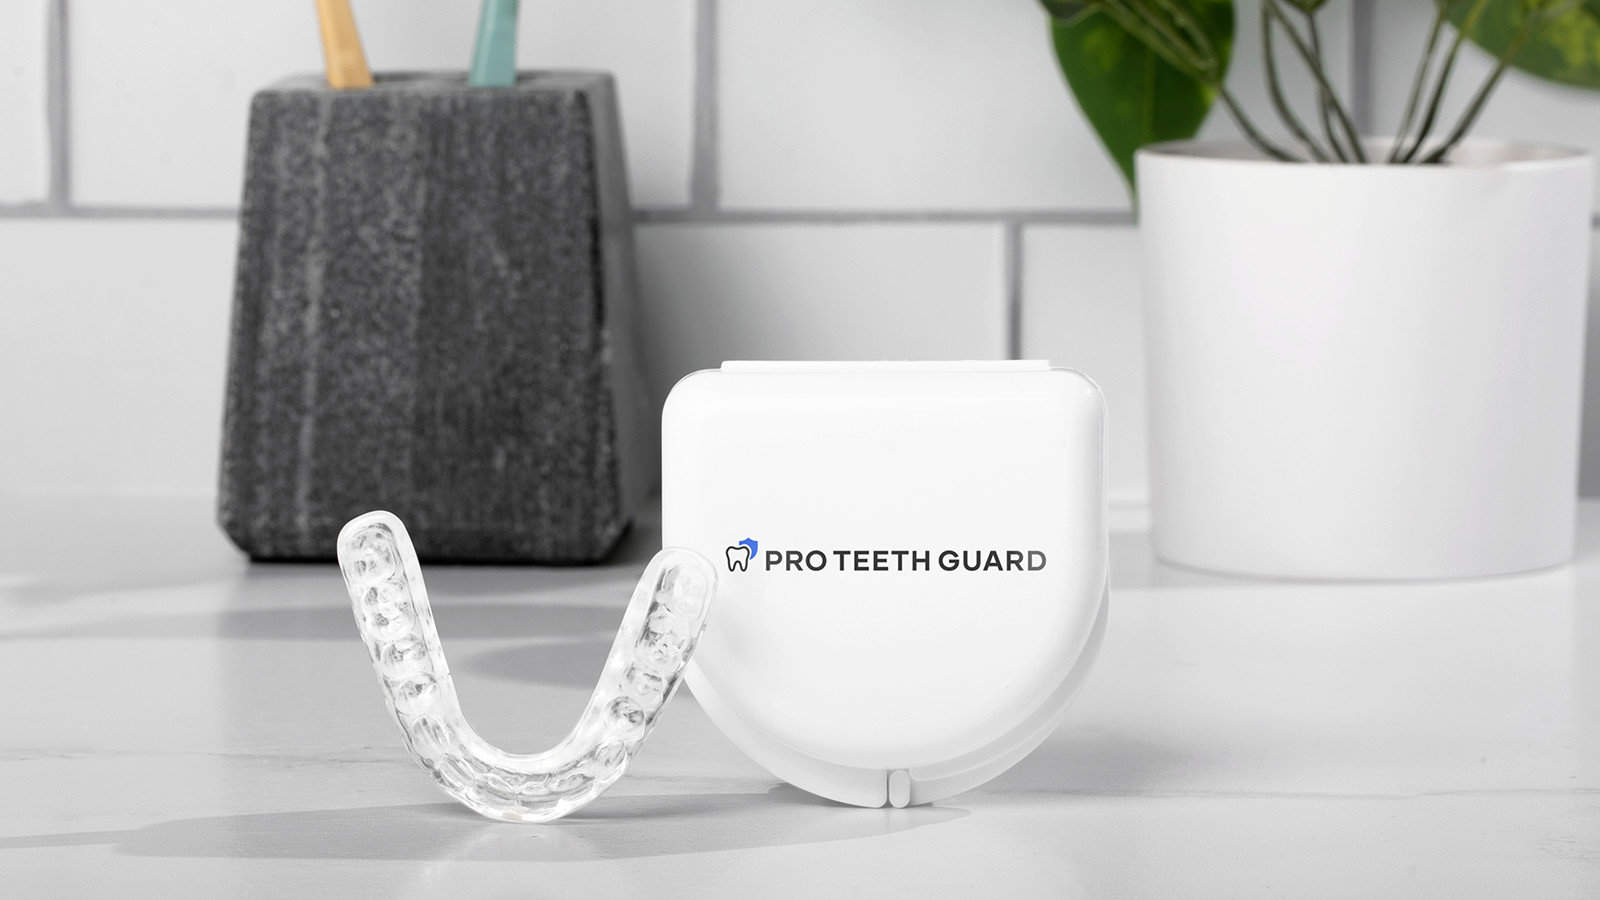 Pro Teeth Guard night guard